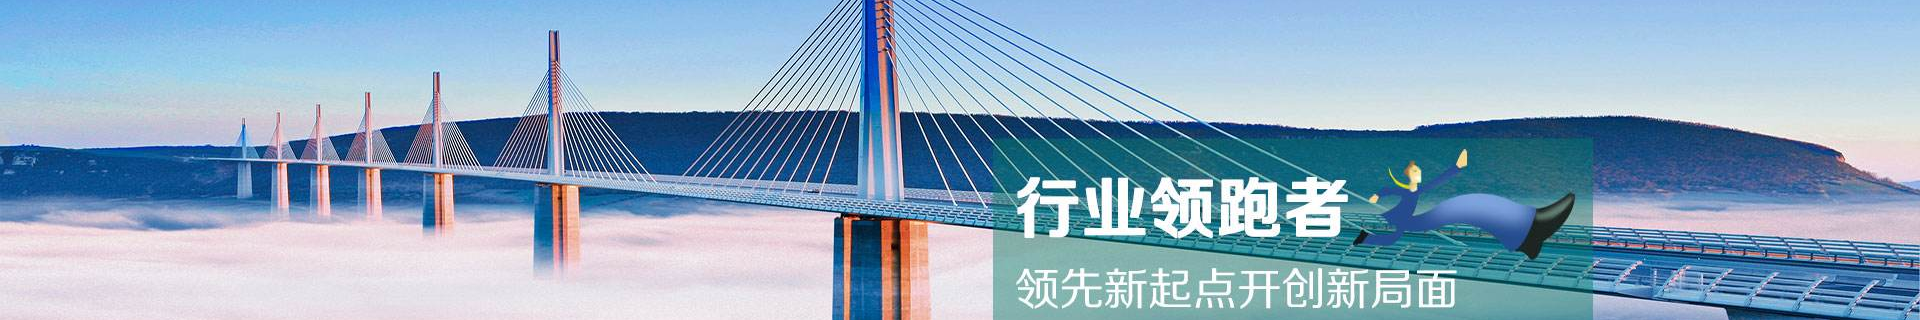 天游ty8官方网站_ty8线路检测登录注册